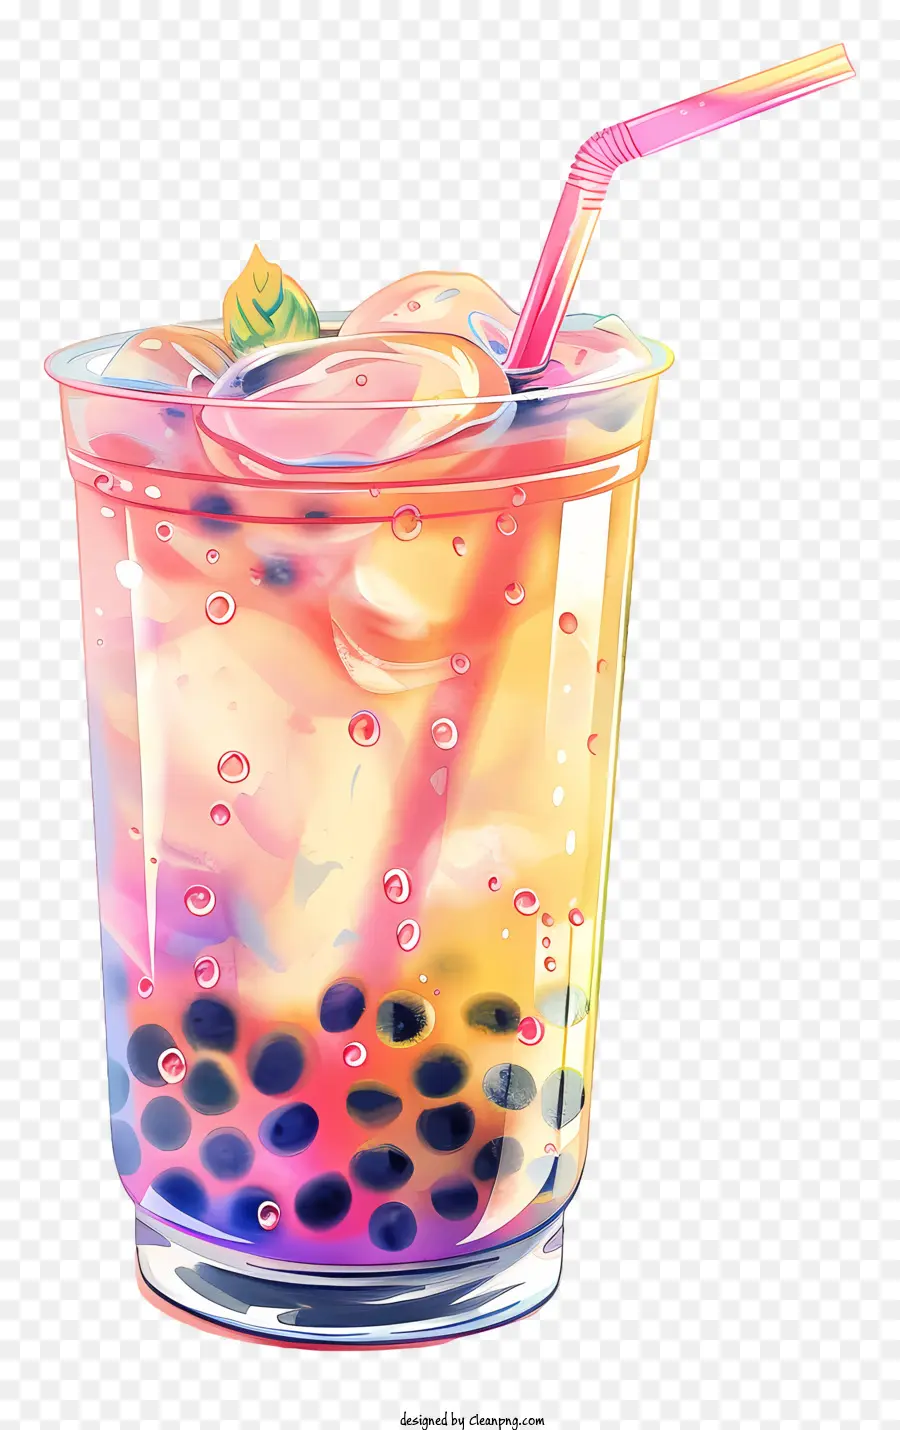 Bubble Tea - Farbenfrohes Getränk mit Blasen, verspielt und einladend